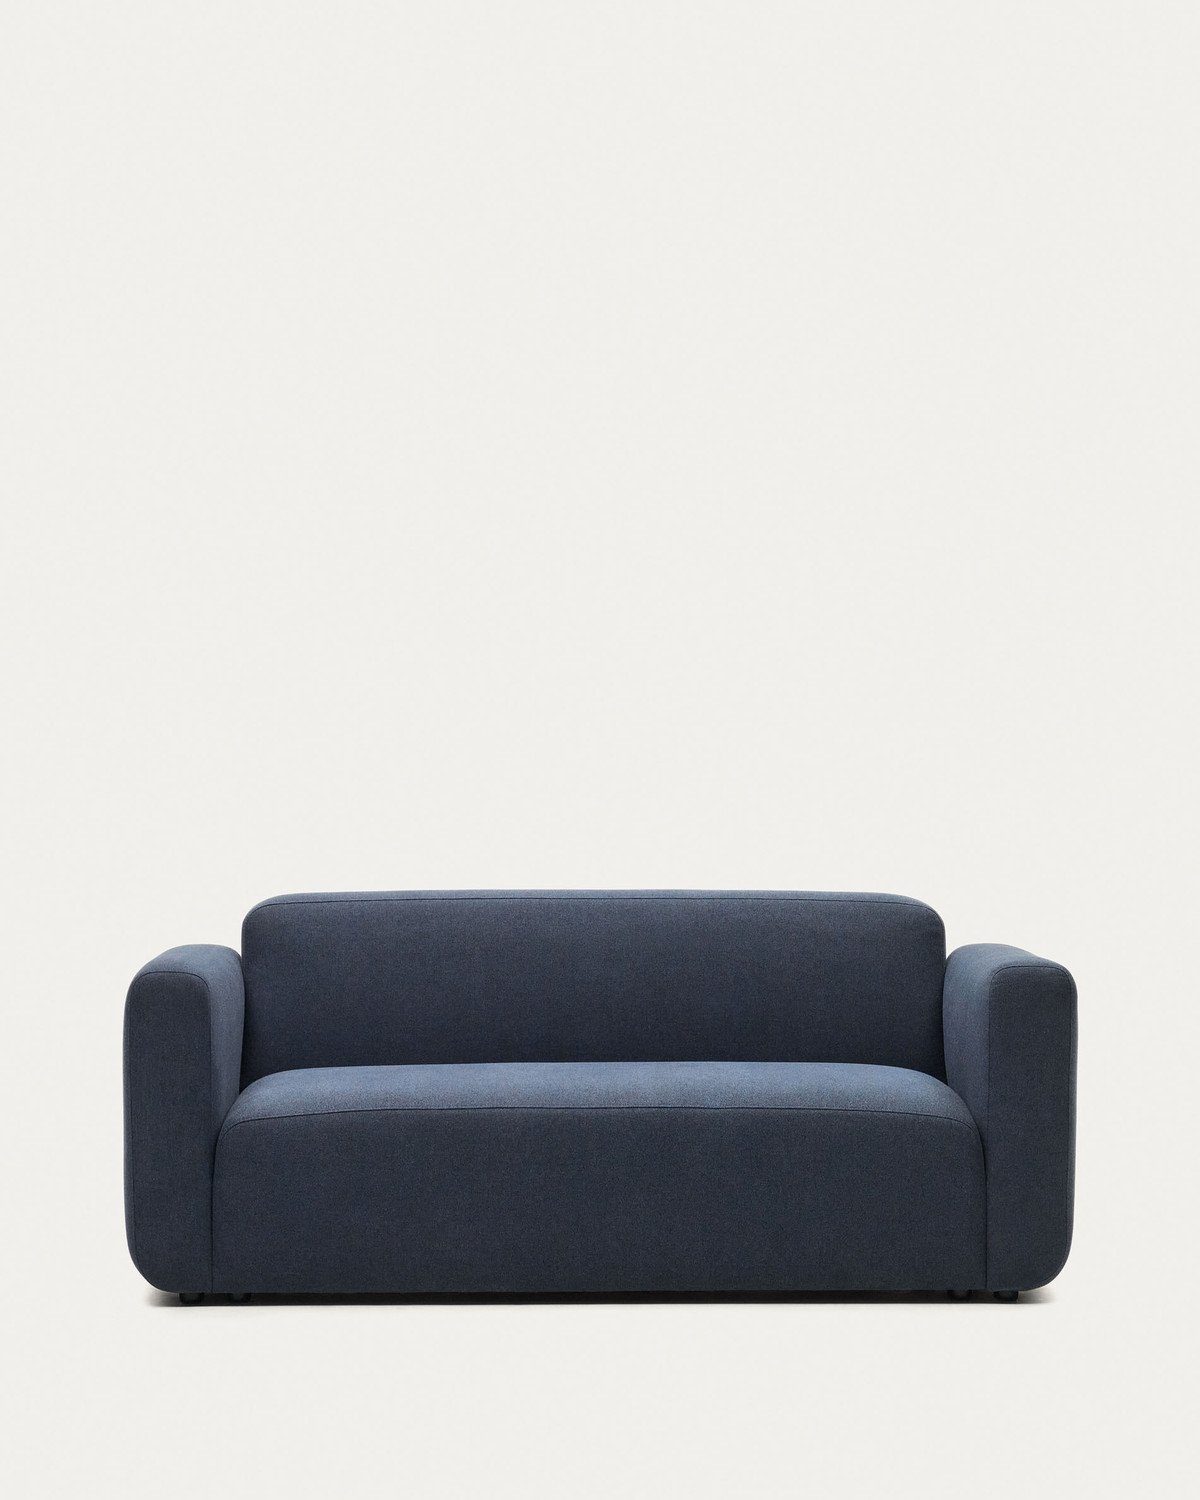 Natur24 Sofa 2-Sitzer-Sofa Neom 188 x 89 x 78 cm Blau Sitzgelegenheit Wohnzimmer